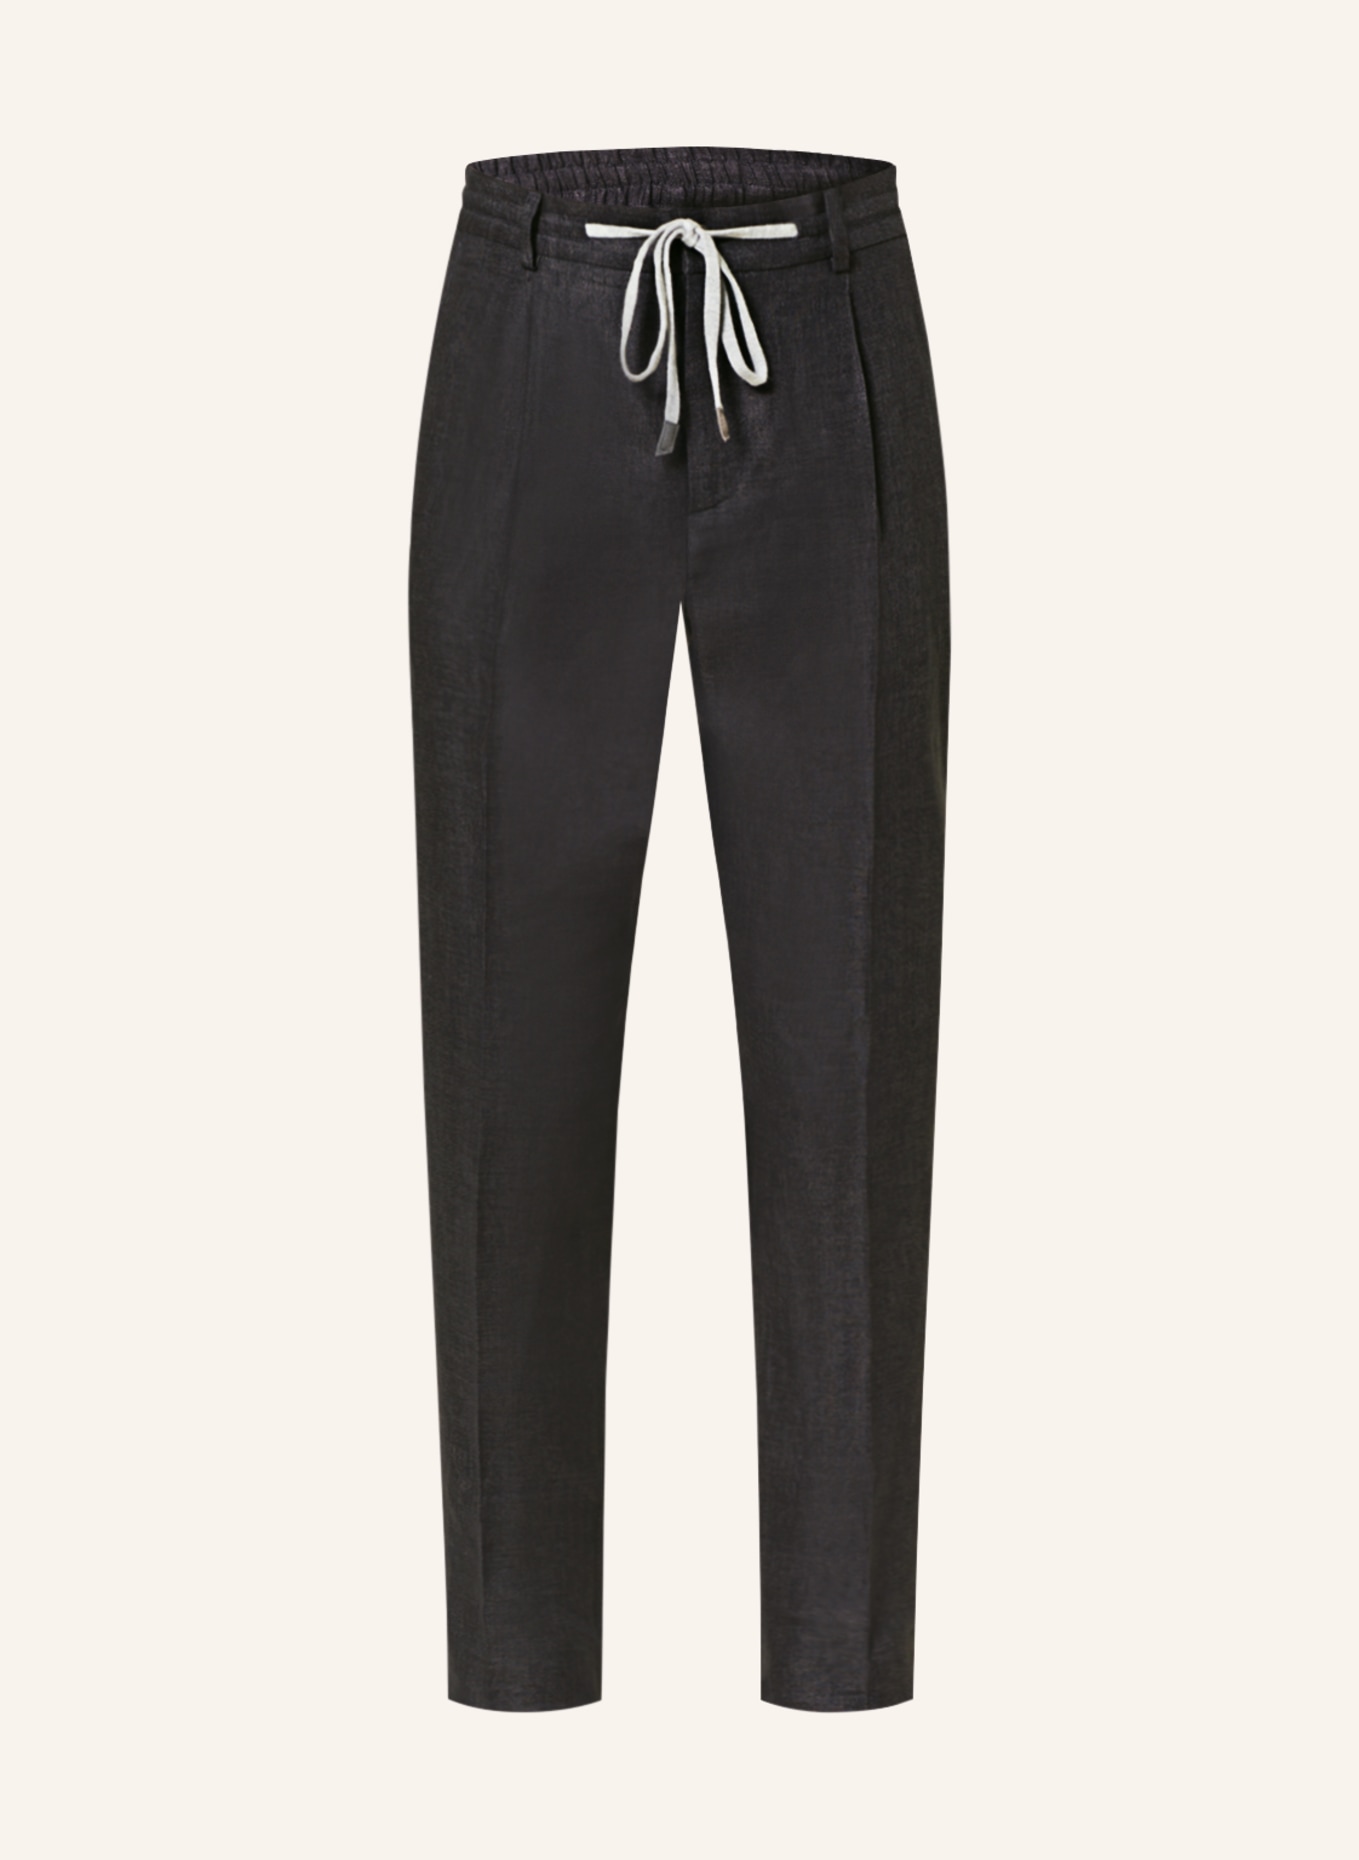 PESERICO Anzughose im Jogging-Stil Extra Slim Fit aus Leinen, Farbe: 979 Navy (Bild 1)